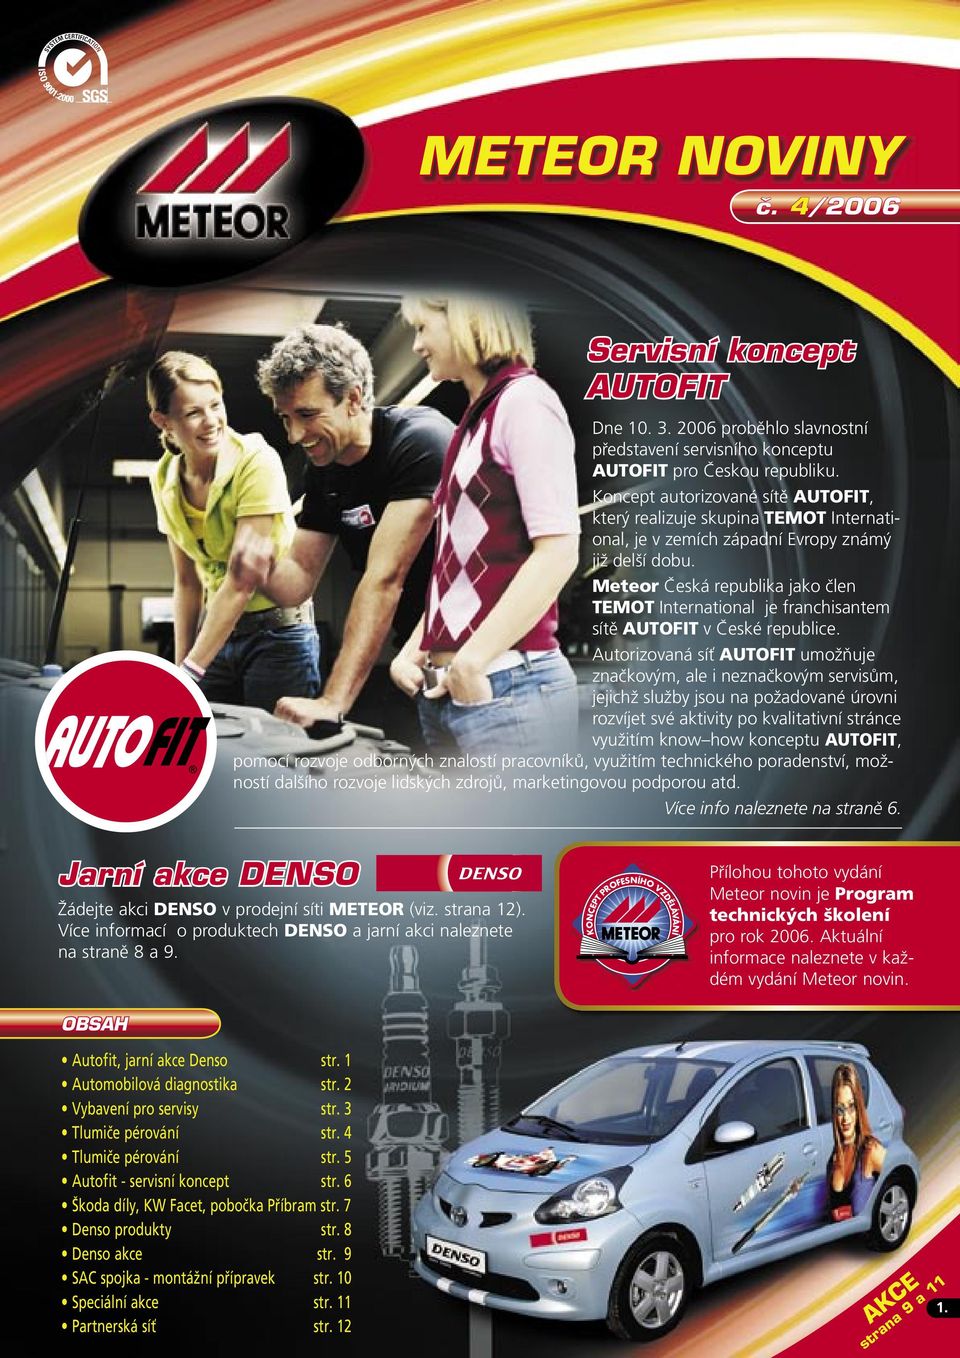 Meteor Česká republika jako člen TEMOT International je franchisantem sítě AUTOFIT v České republice.